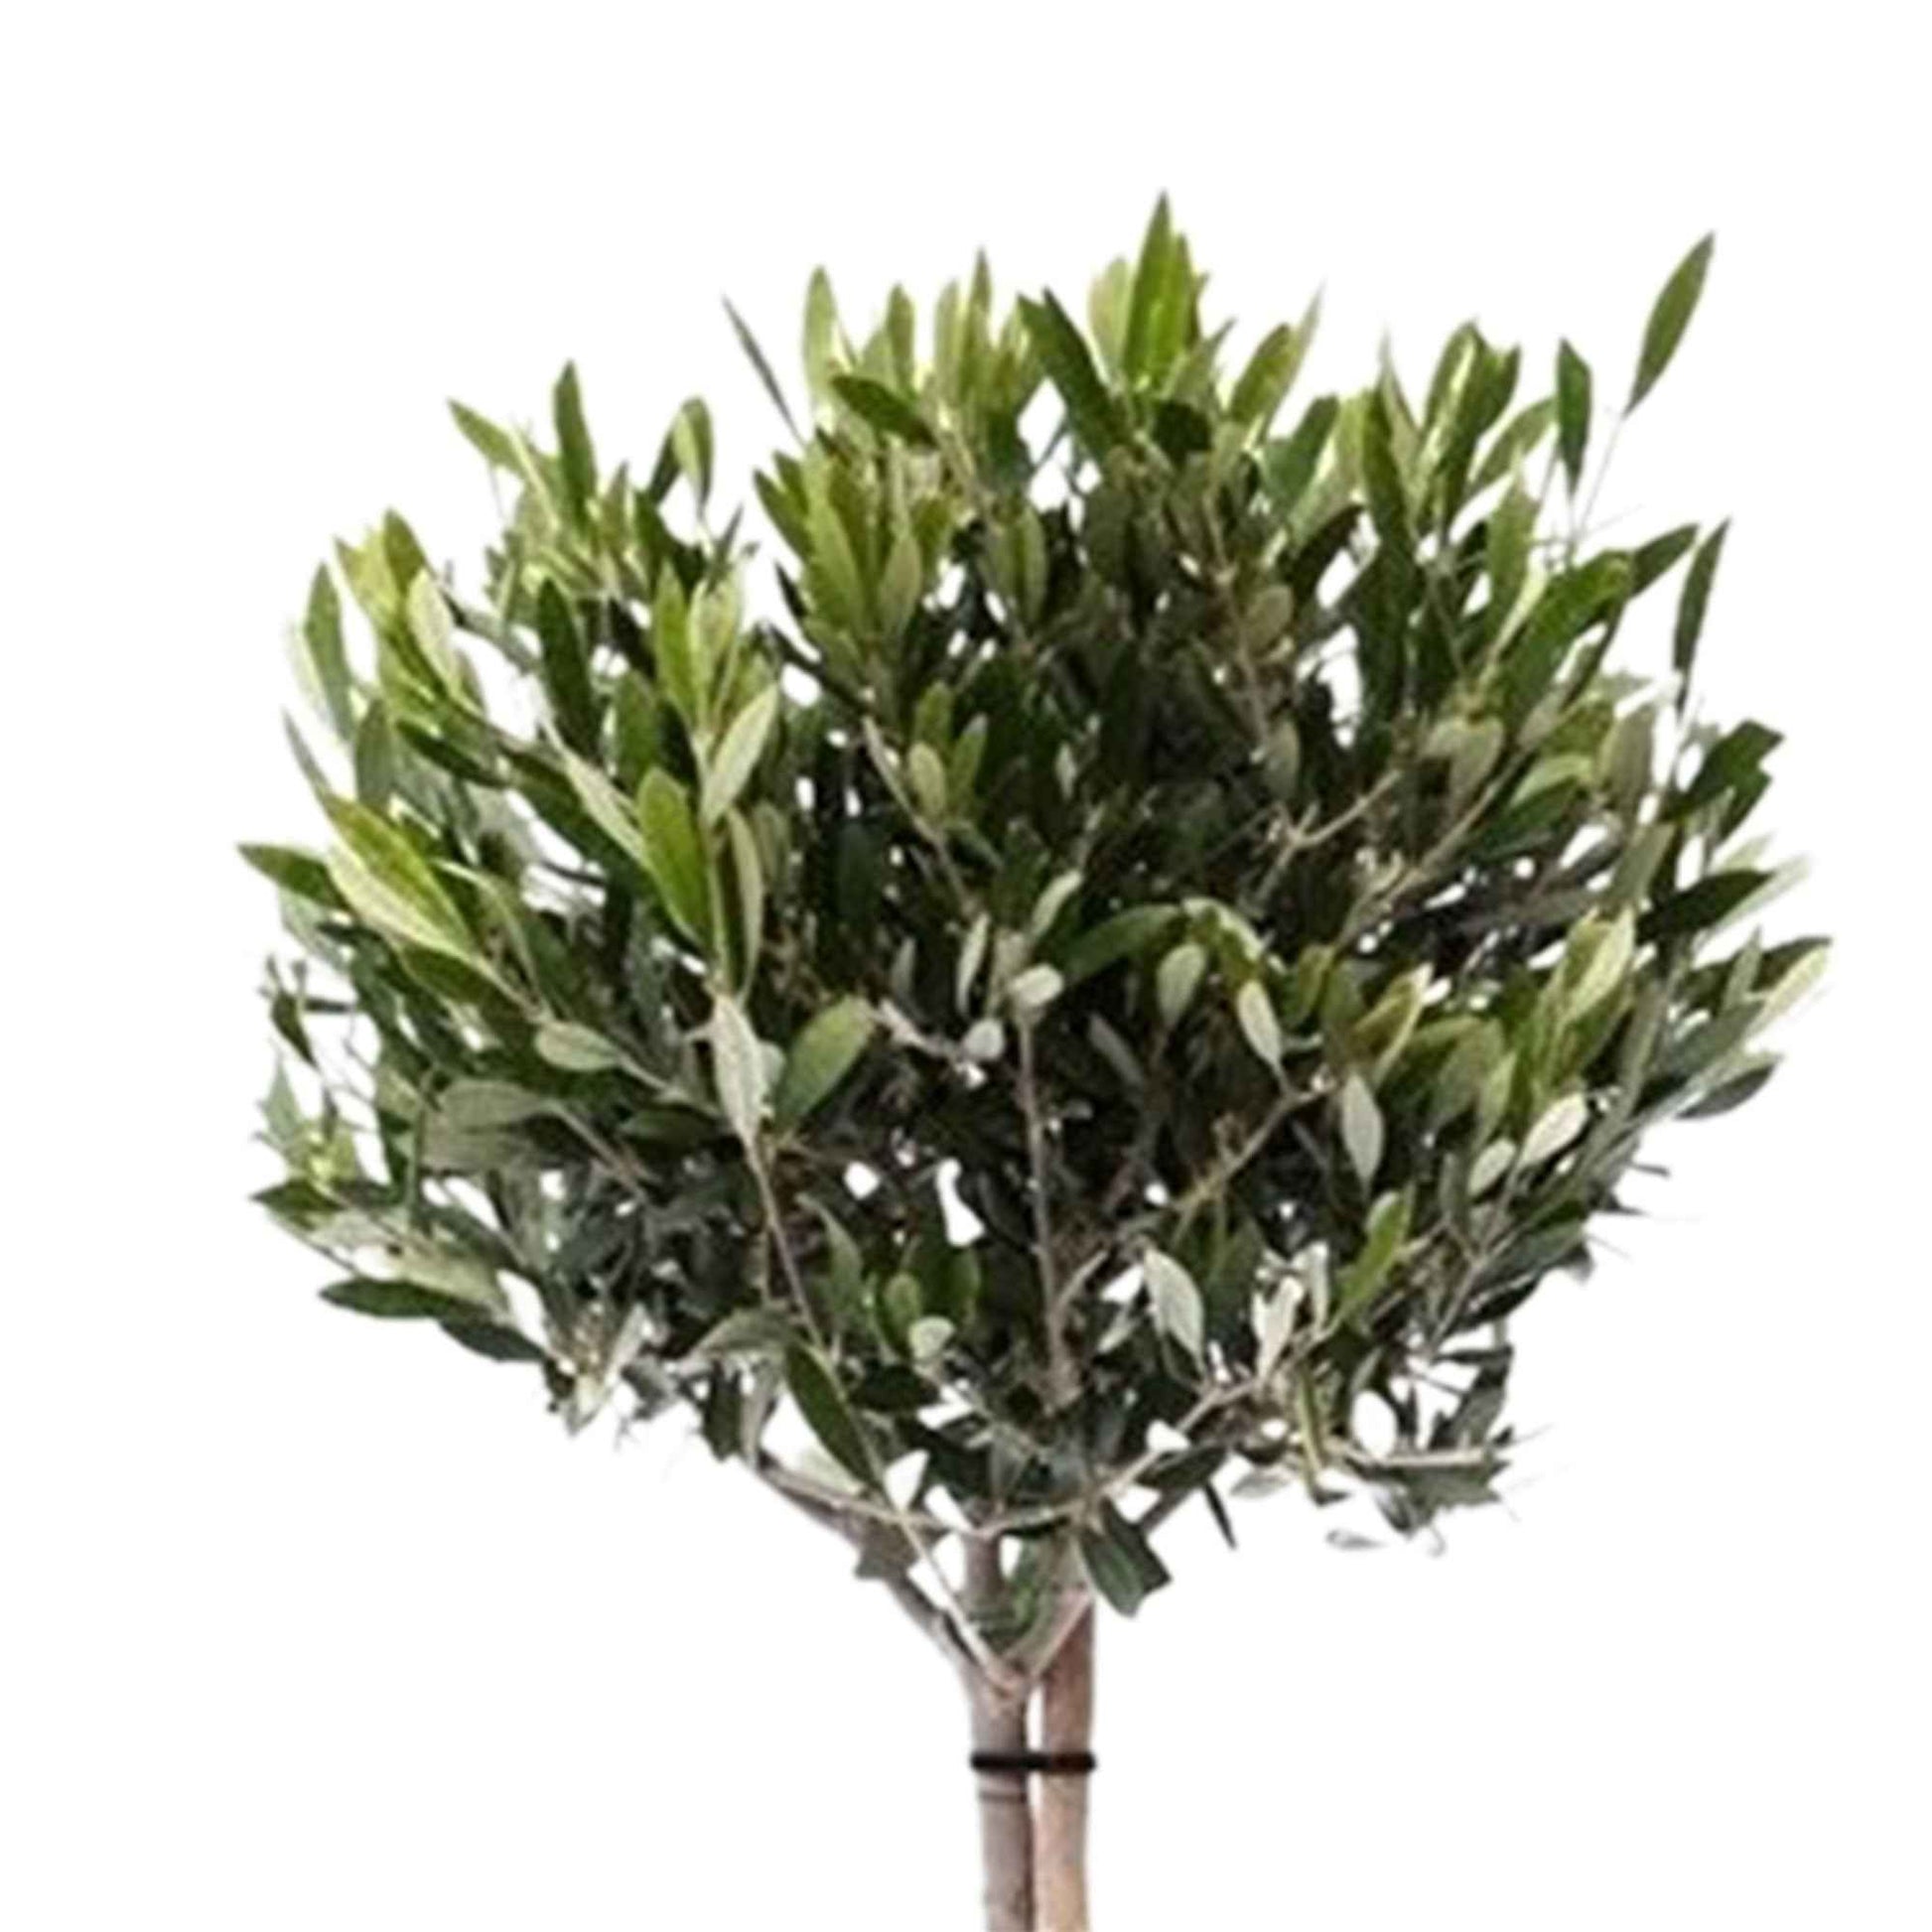 Olijfboom Olea europeana 85-95 cm - Bomen en hagen